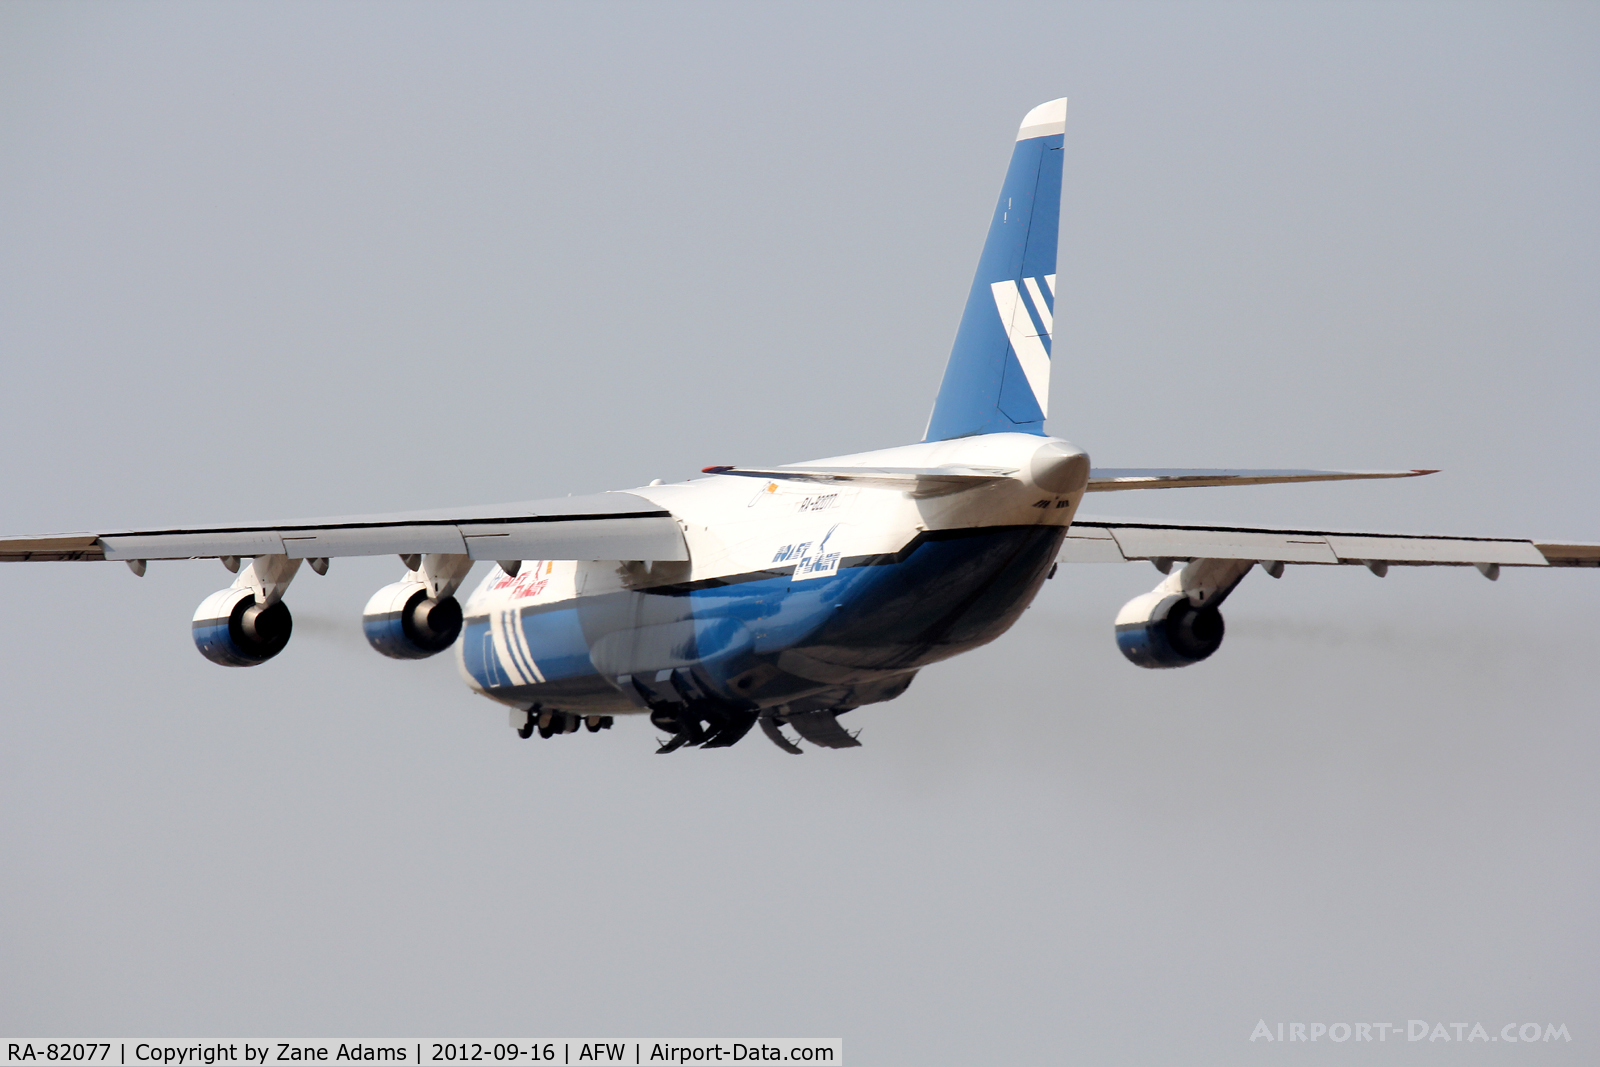 RA-82077, 1995 Antonov An-124-100 Ruslan C/N 9773054459151/0709, AN-124 departing Alliance Airport